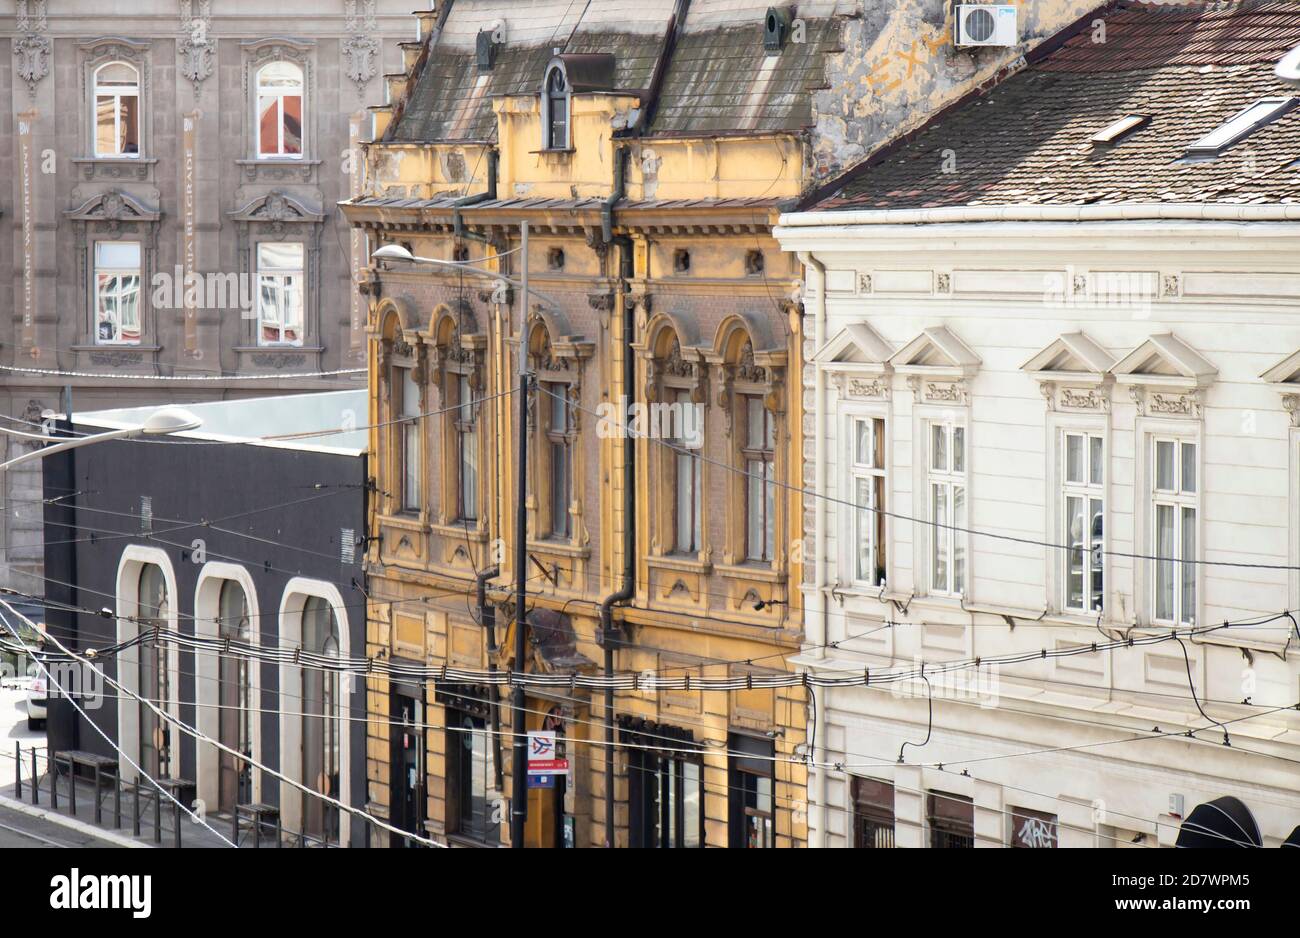 Belgrado, Serbia - 09 ottobre 2020: Case di architettura neoclassica e secessionale in via Karadjordjeva, con cavi elettrici del tram Foto Stock